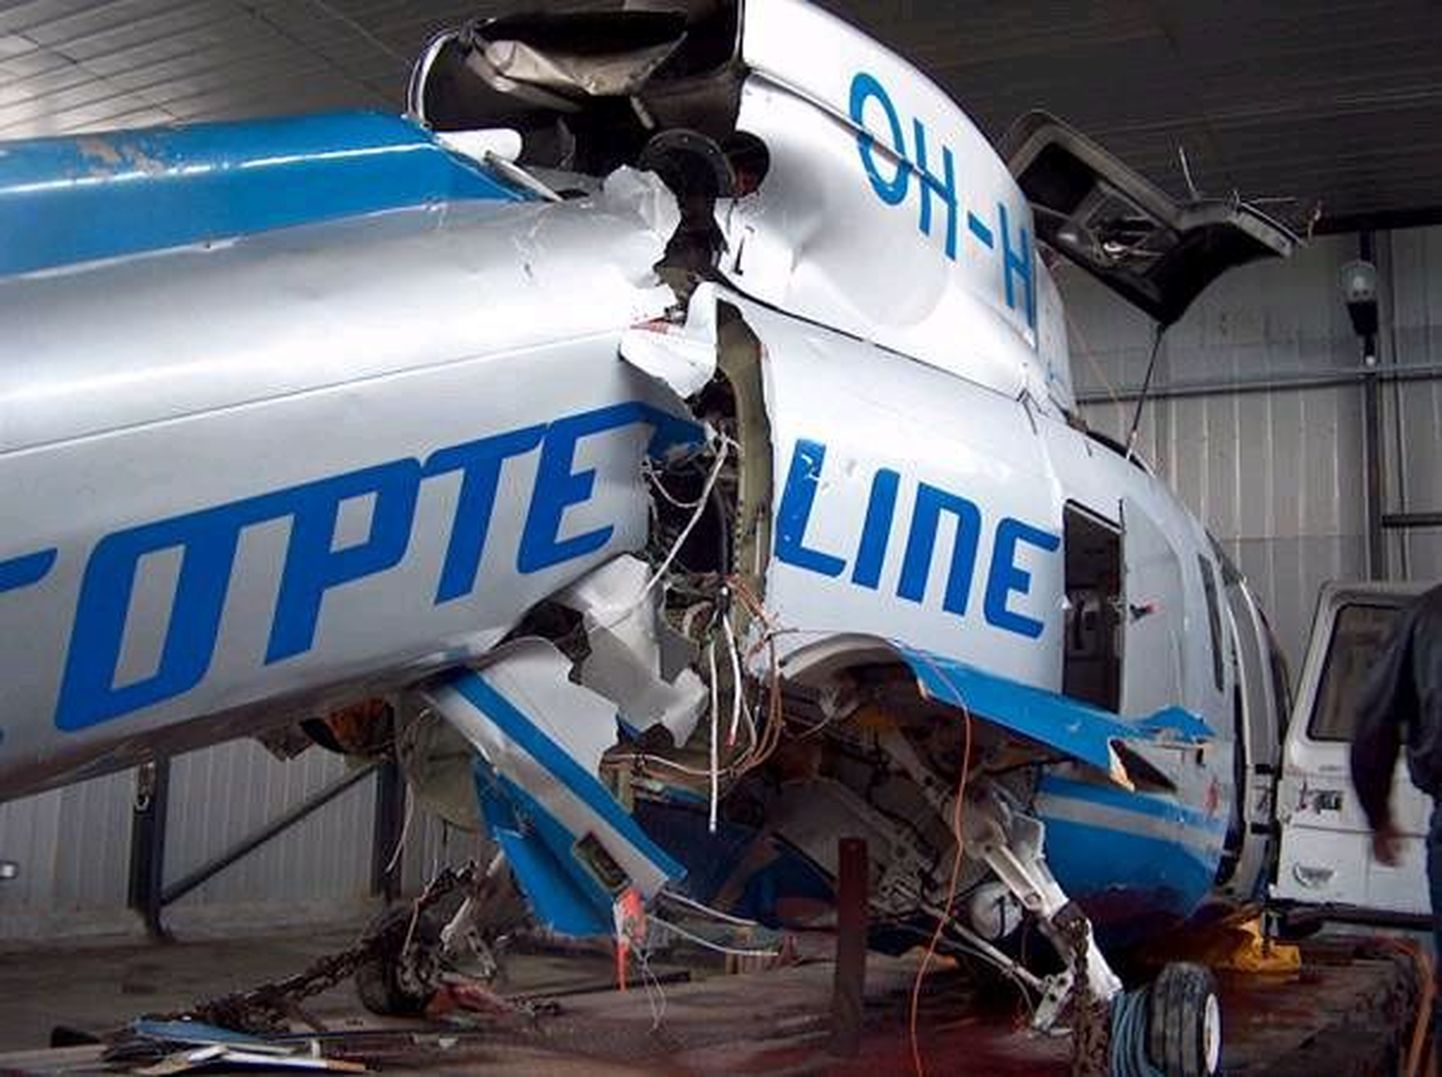 Copterline'i kopteri Sikorsky S-76 rusud Tallinna lennuvälja angaaris